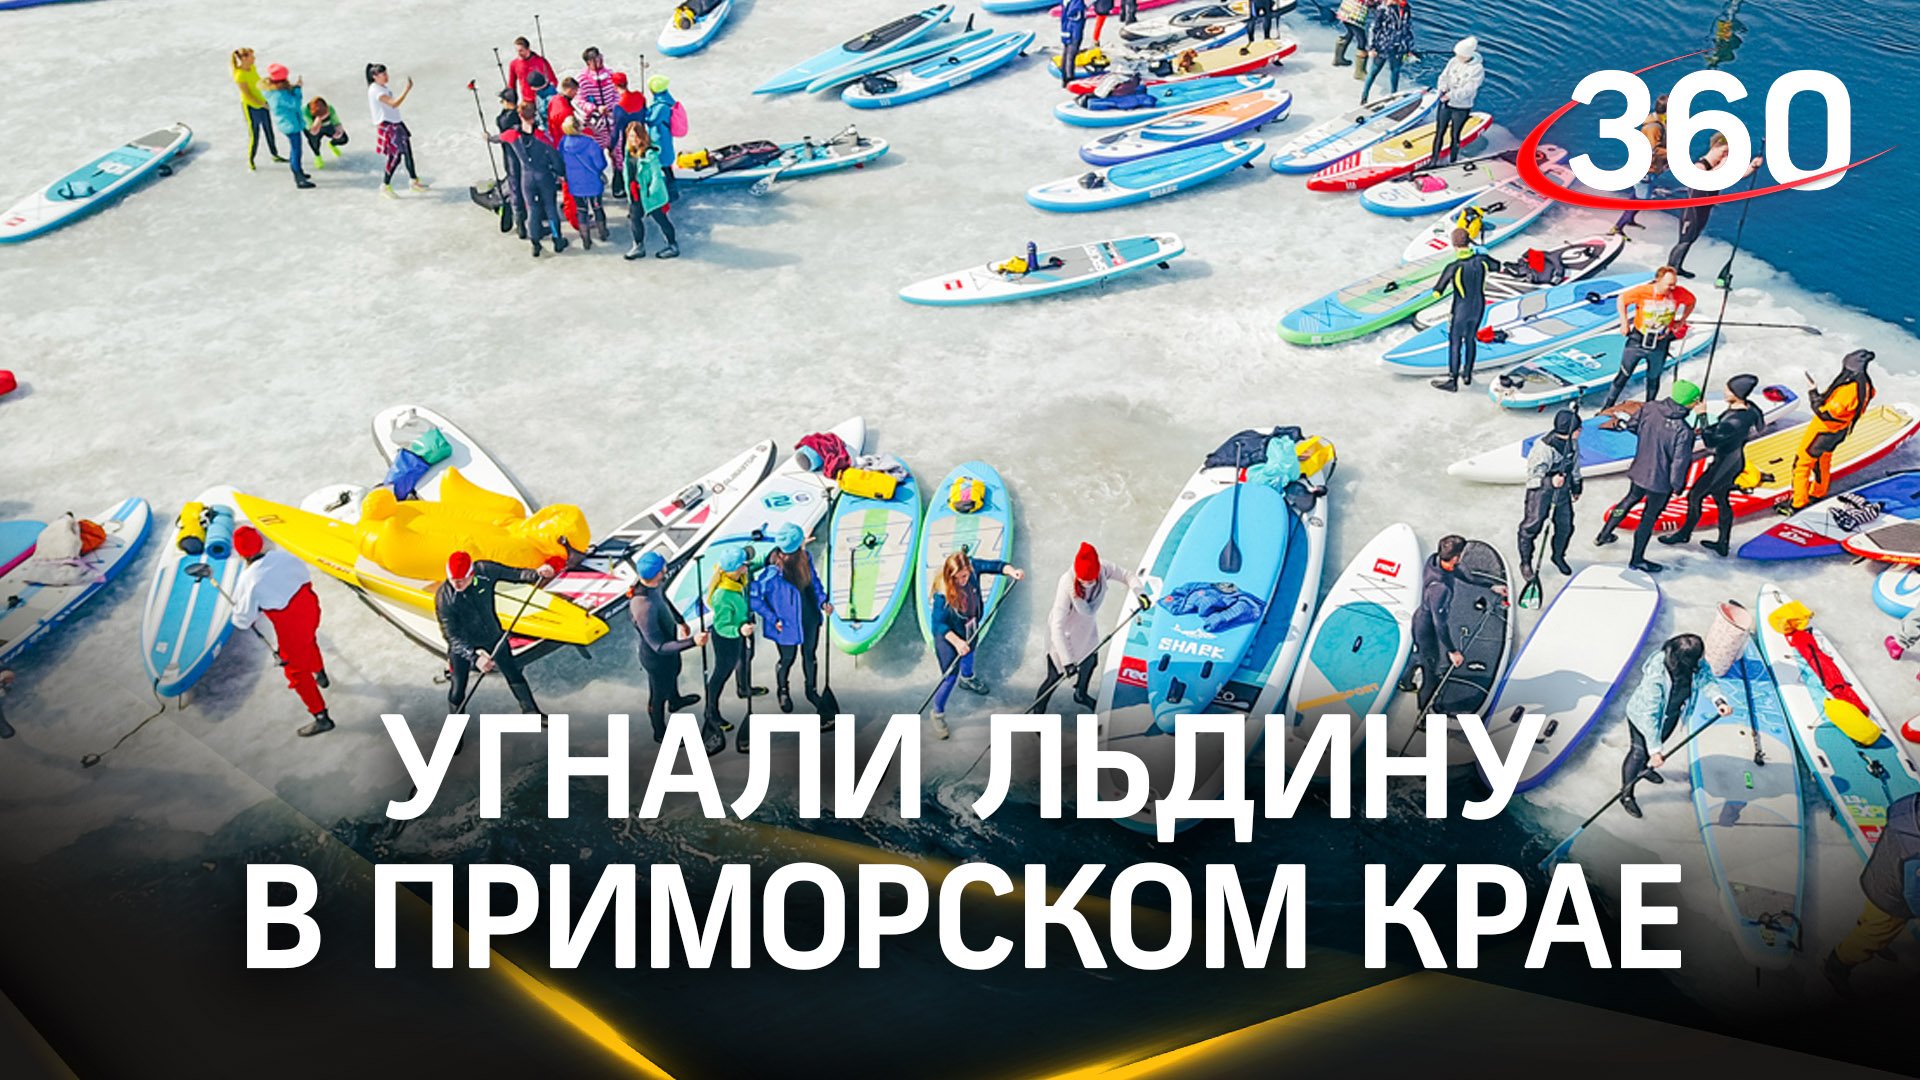 Более 200 сапсерферов «угнали» льдину в Приморском крае